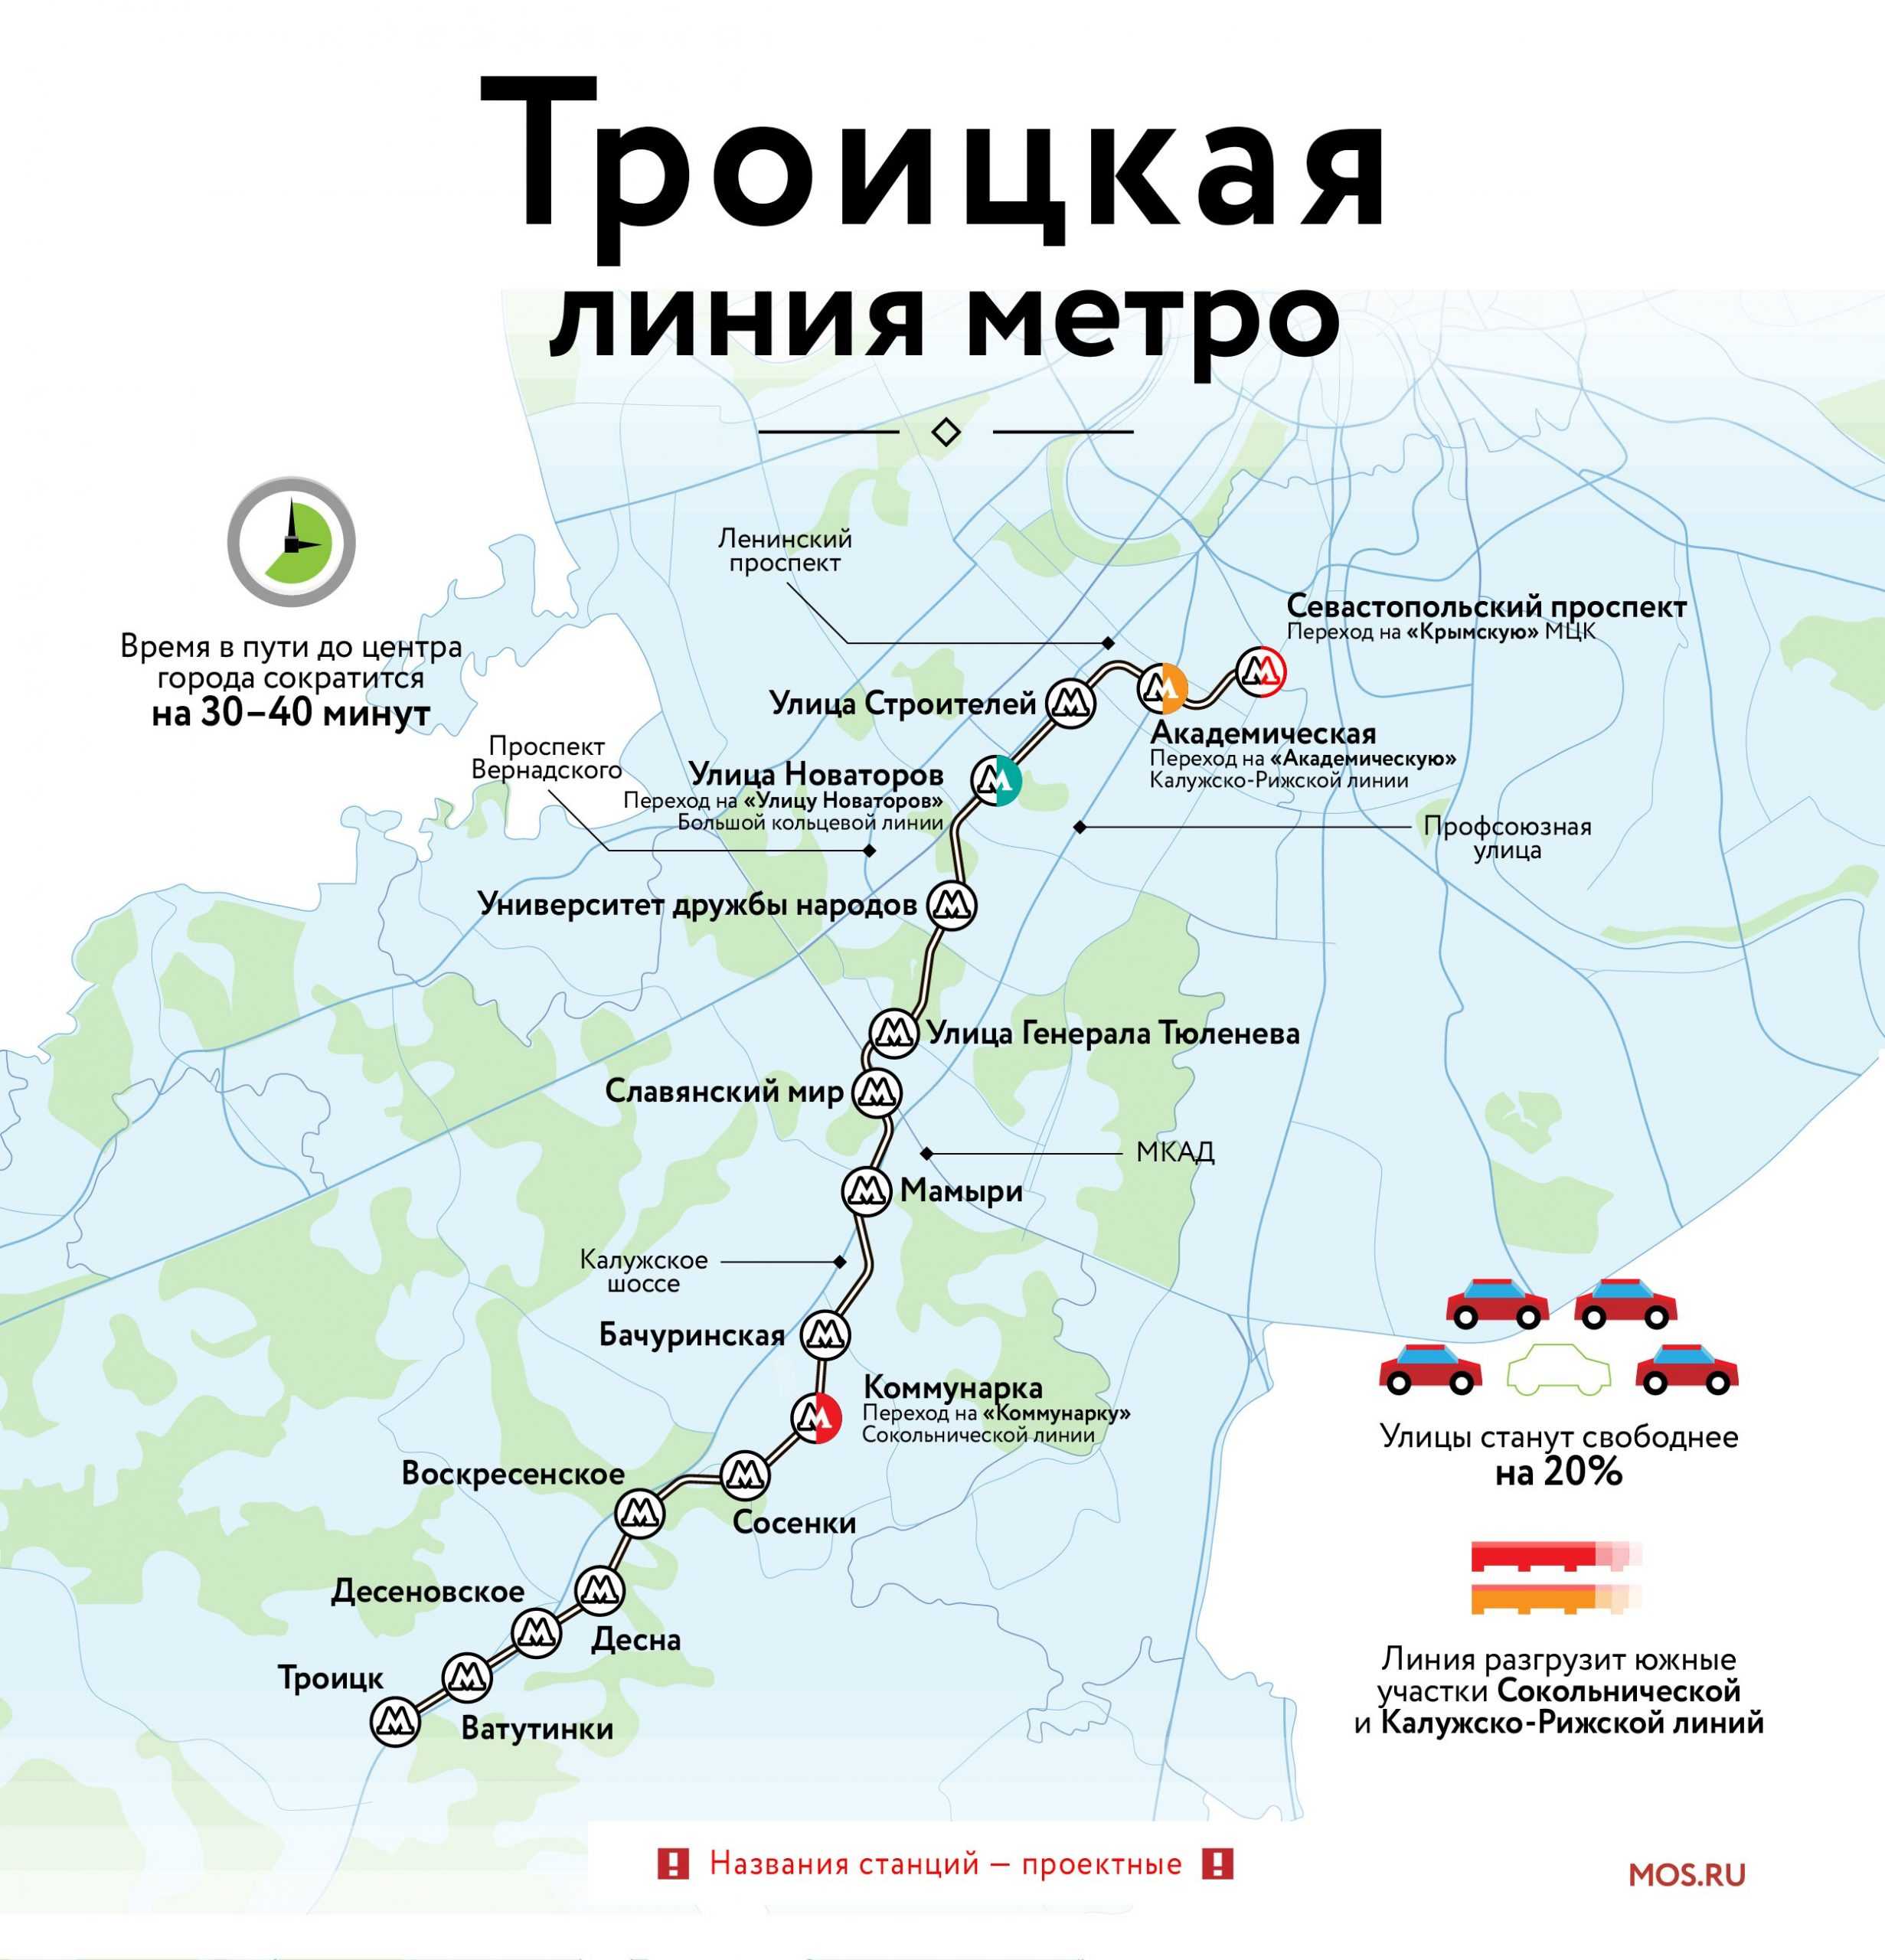 Новая Троицкая ветка метро готова почти на 40%